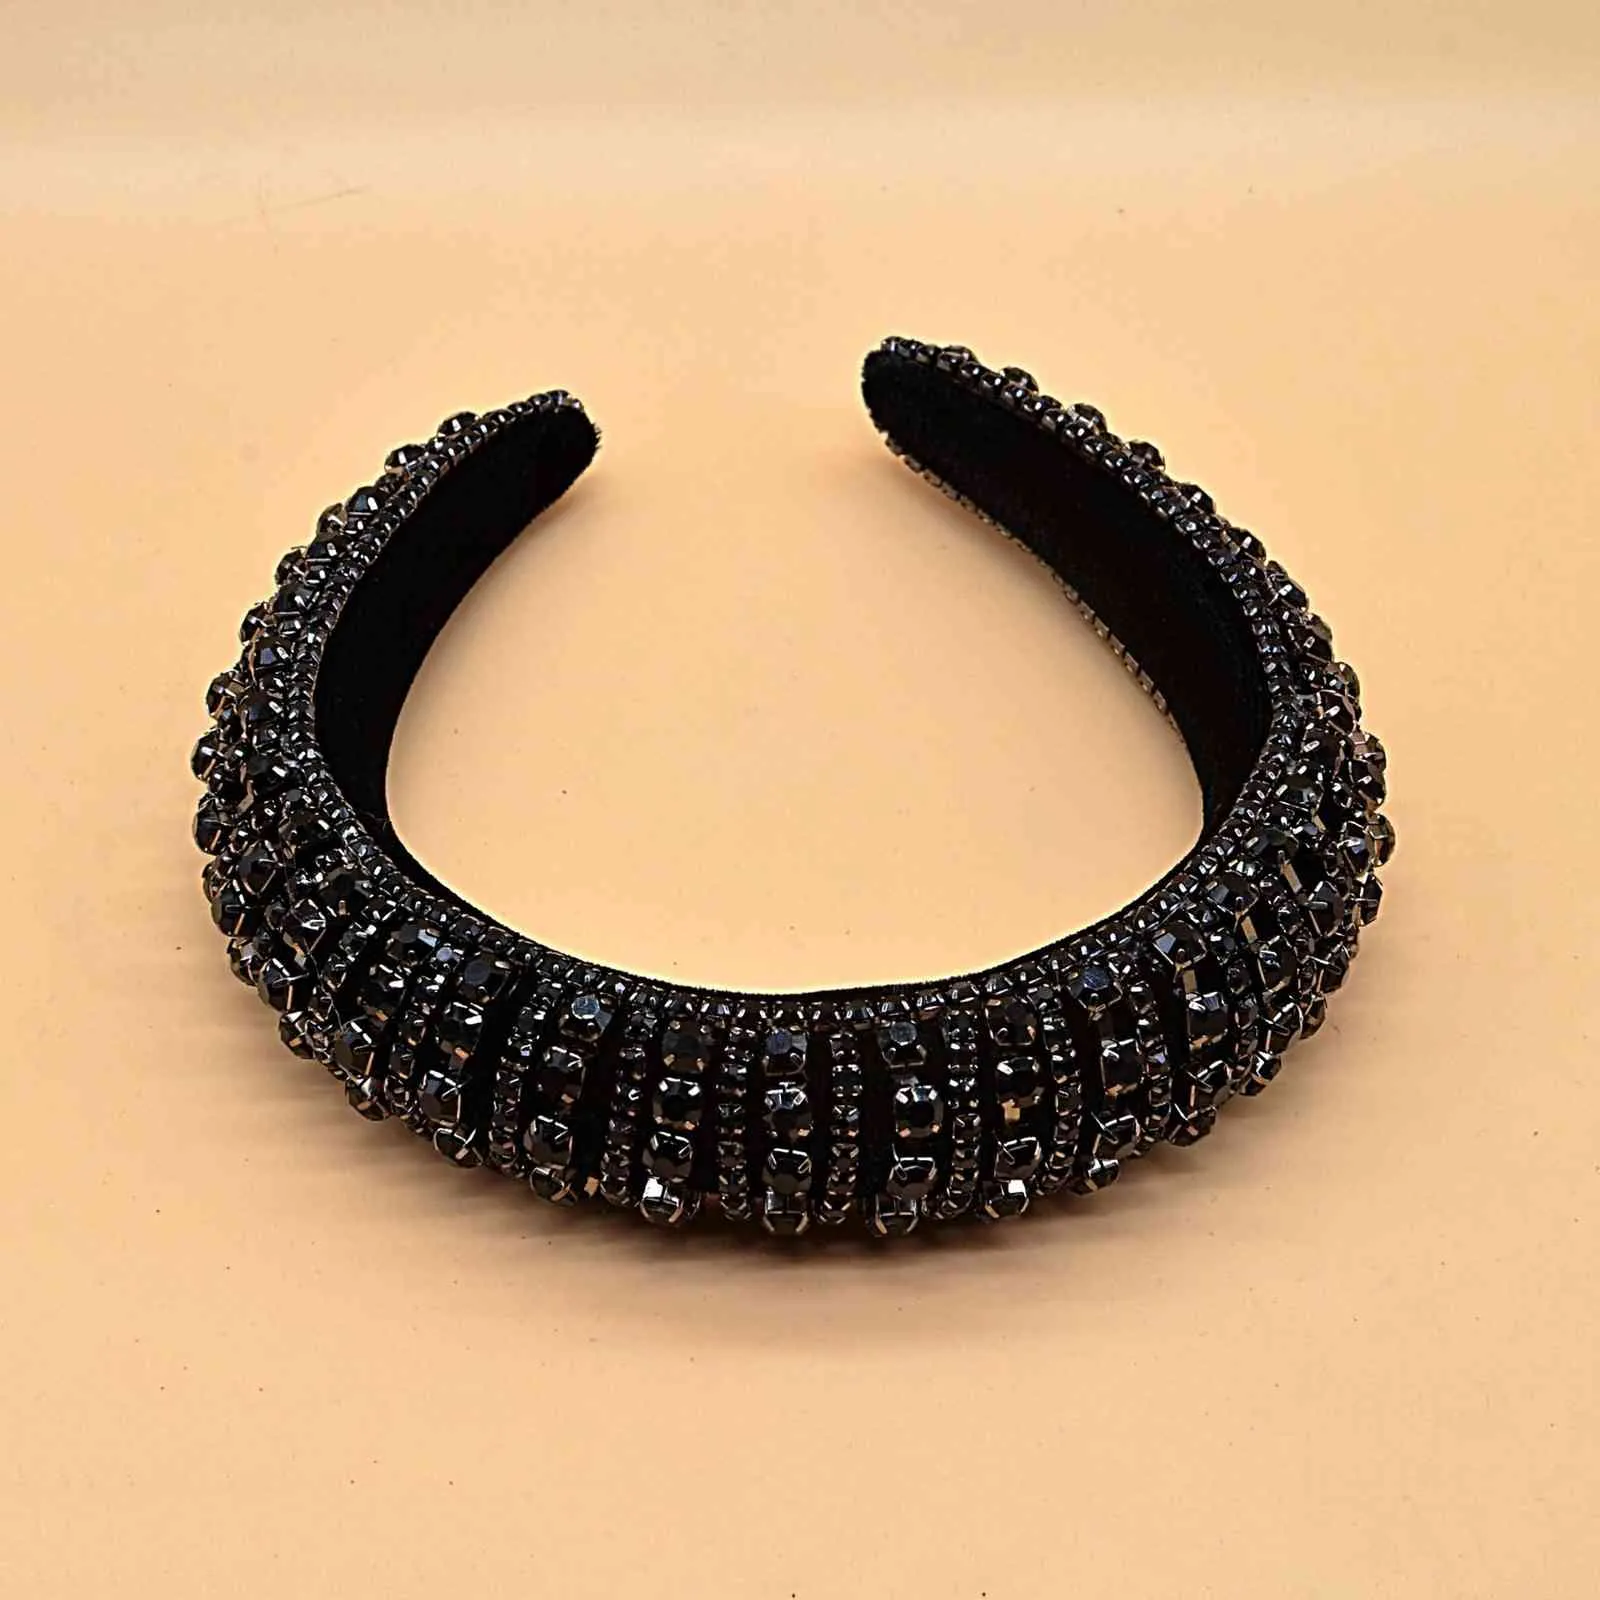 JOLORYM Schmuck Frauen Korea Strass Trendy Kopfschmuck Schwamm Haarband Flanell Haar-accessoire 3 cm Breite Stirnband FG-YL-005